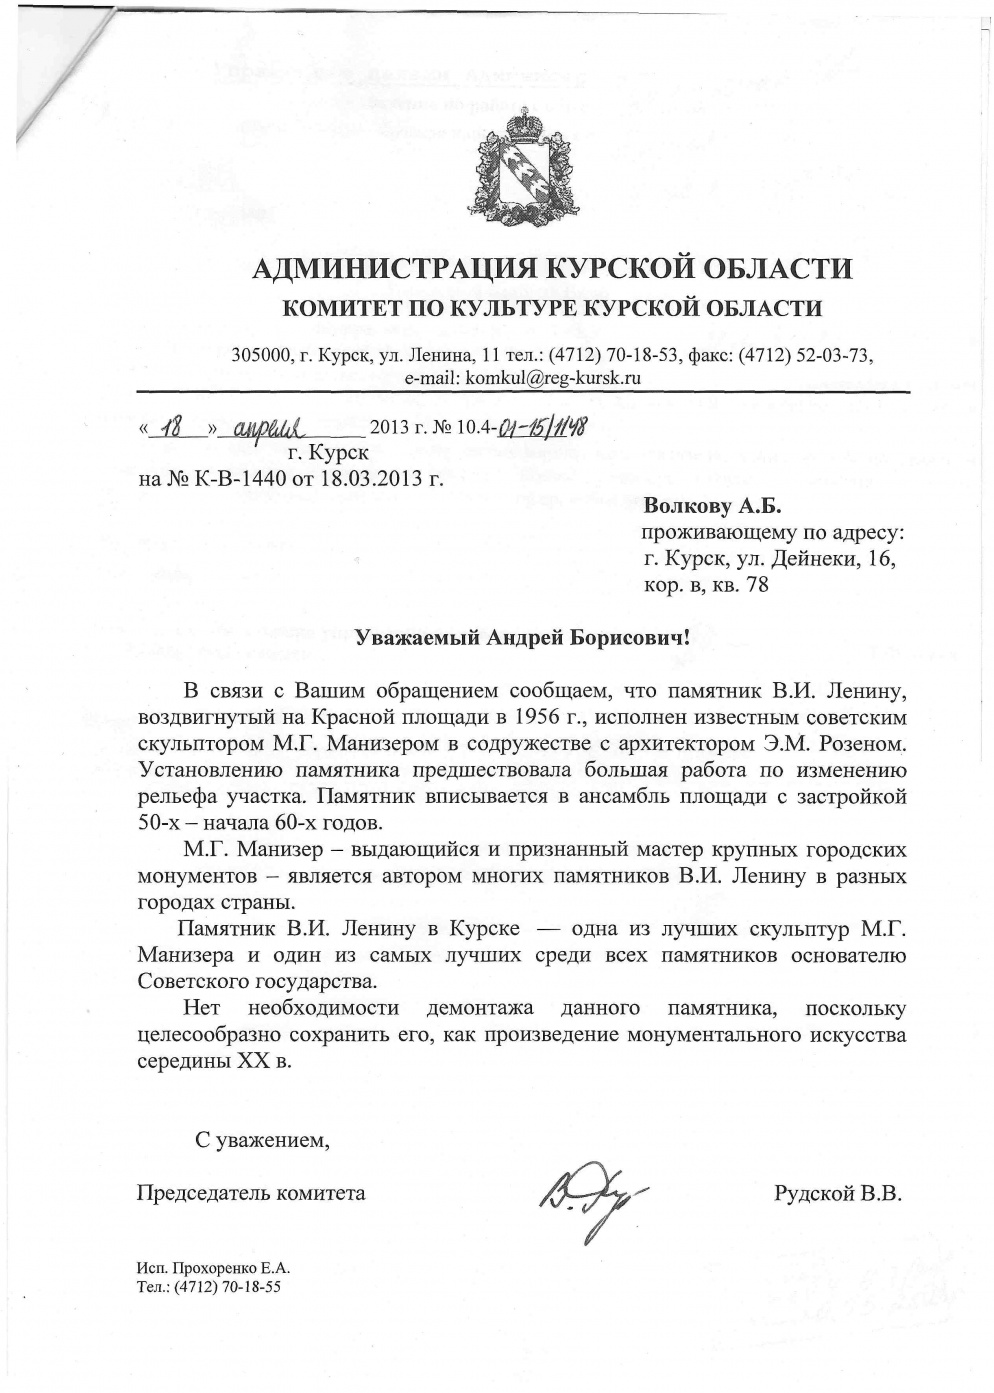 ответ администрации на запрос о демонтаже памятника ленину